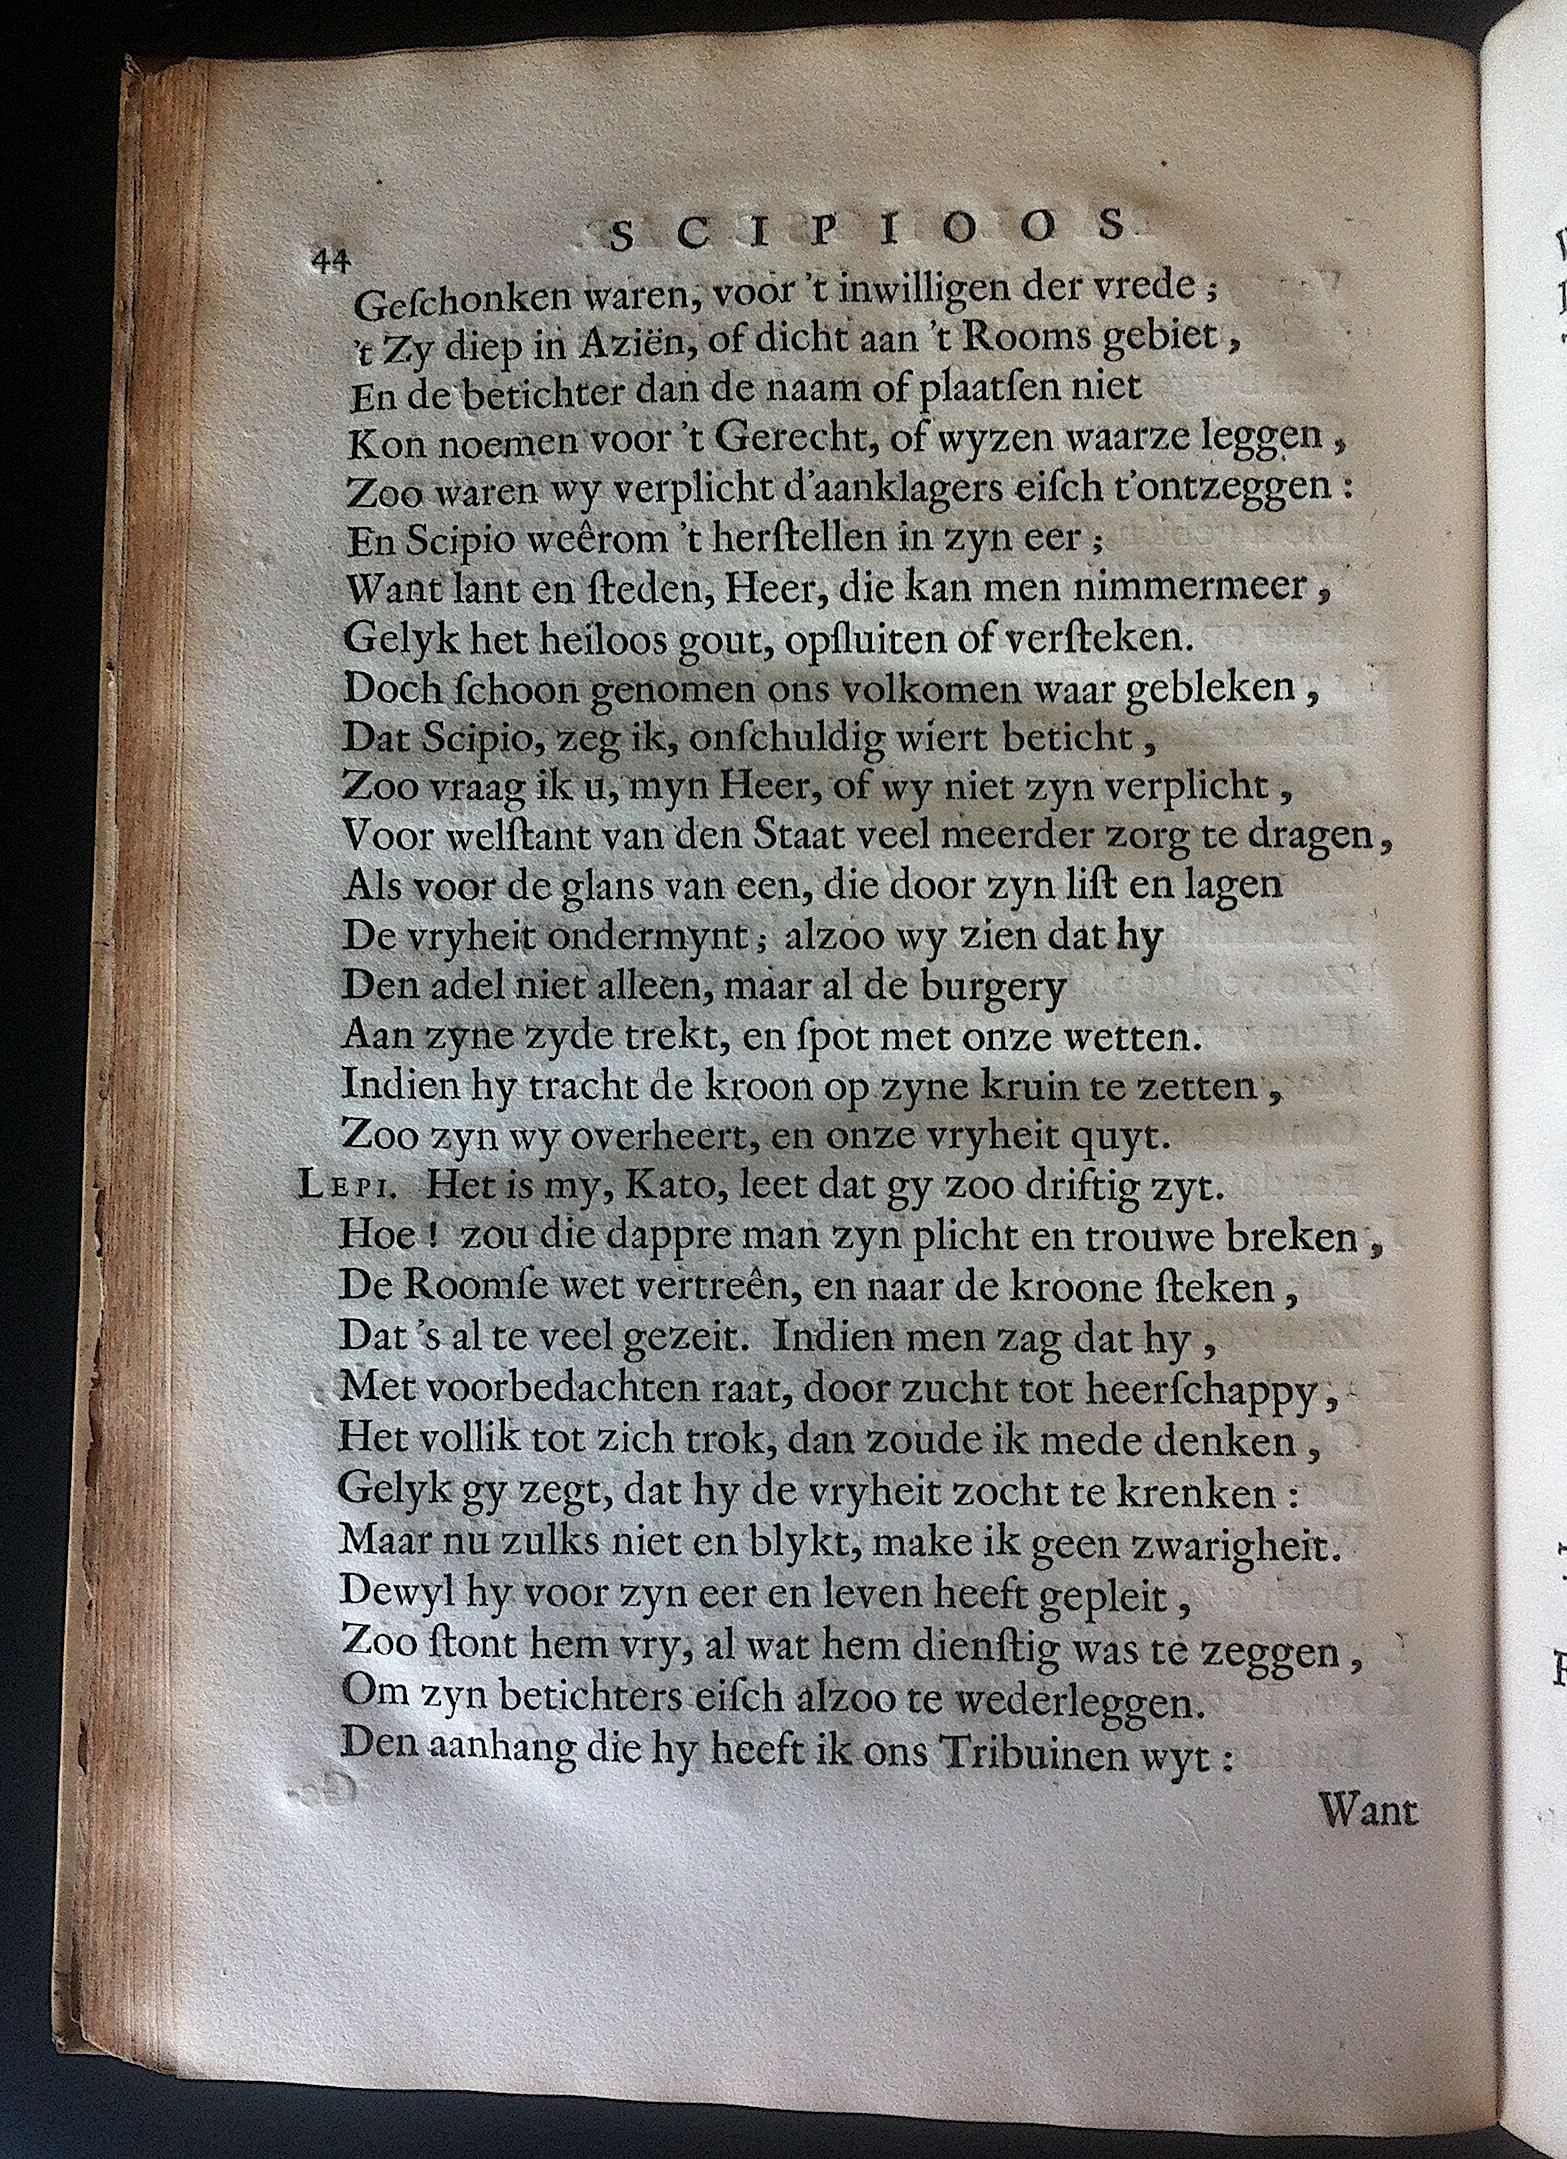 BoccardScipioFolio1658p44